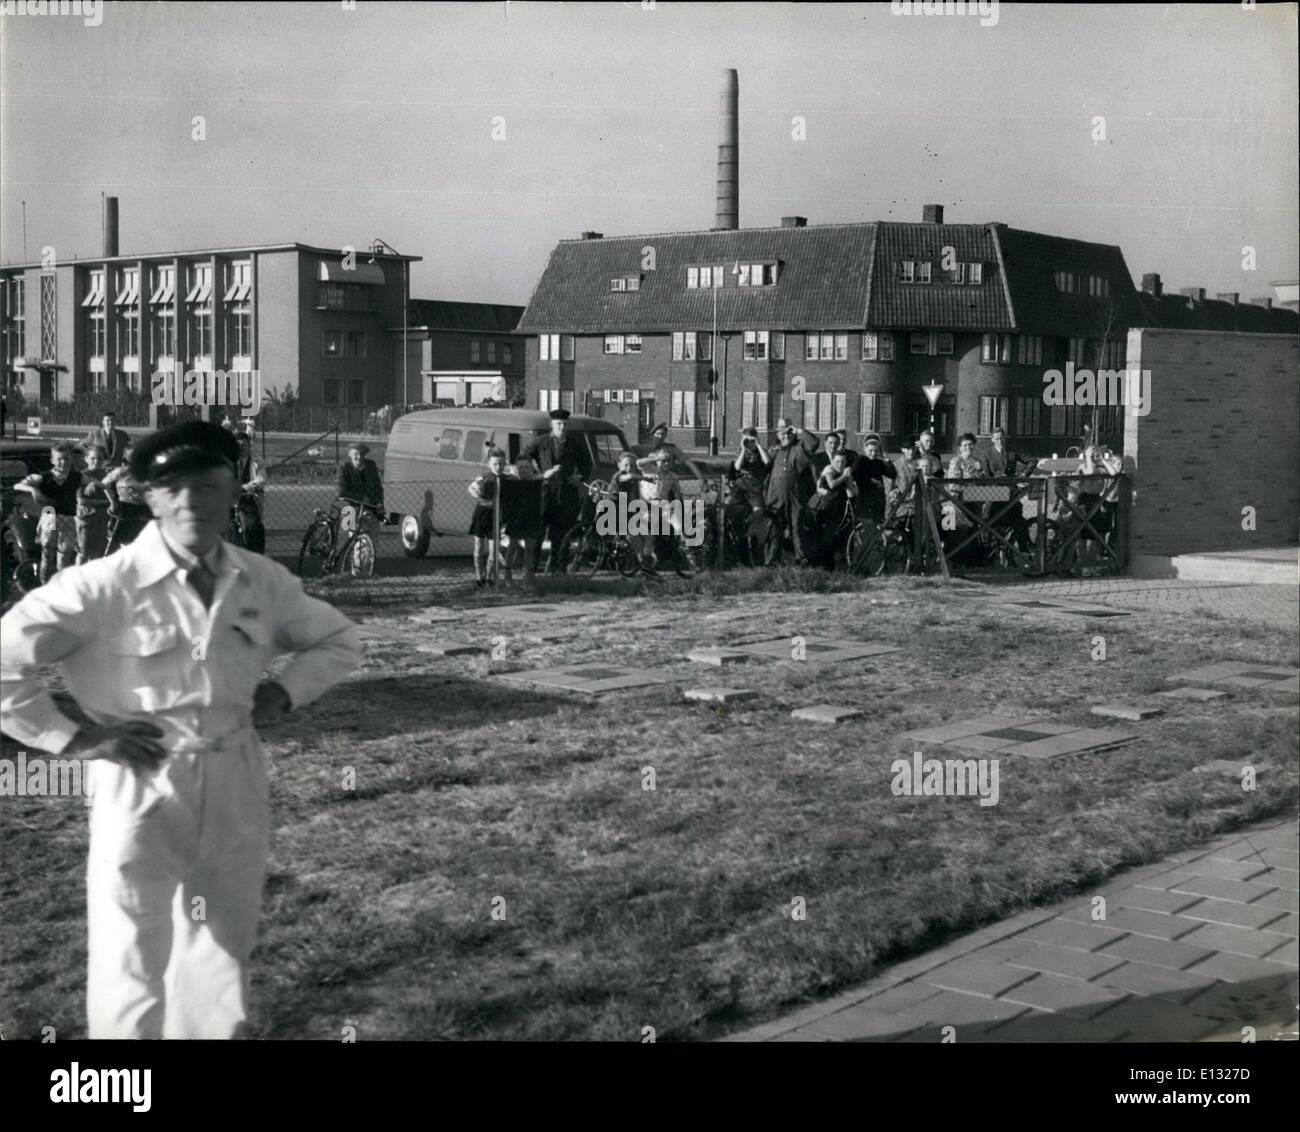 Febbraio 26, 2012 - Europa in elicottero Età: i bambini si riuniscono intorno al perimetro di un eliporto di Maastricht per osservare gli aerei Hoverling, decrescente e sollevamento per il loro movimento laterale di altezza. Foto Stock